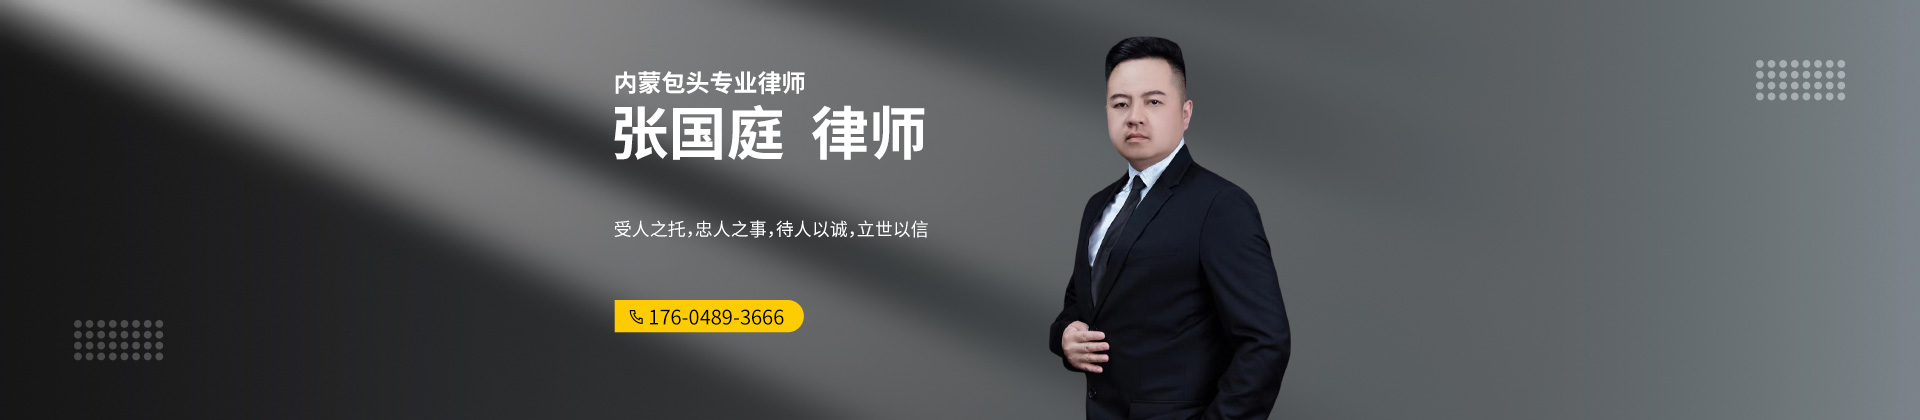 内蒙古包头律师-张国庭律师